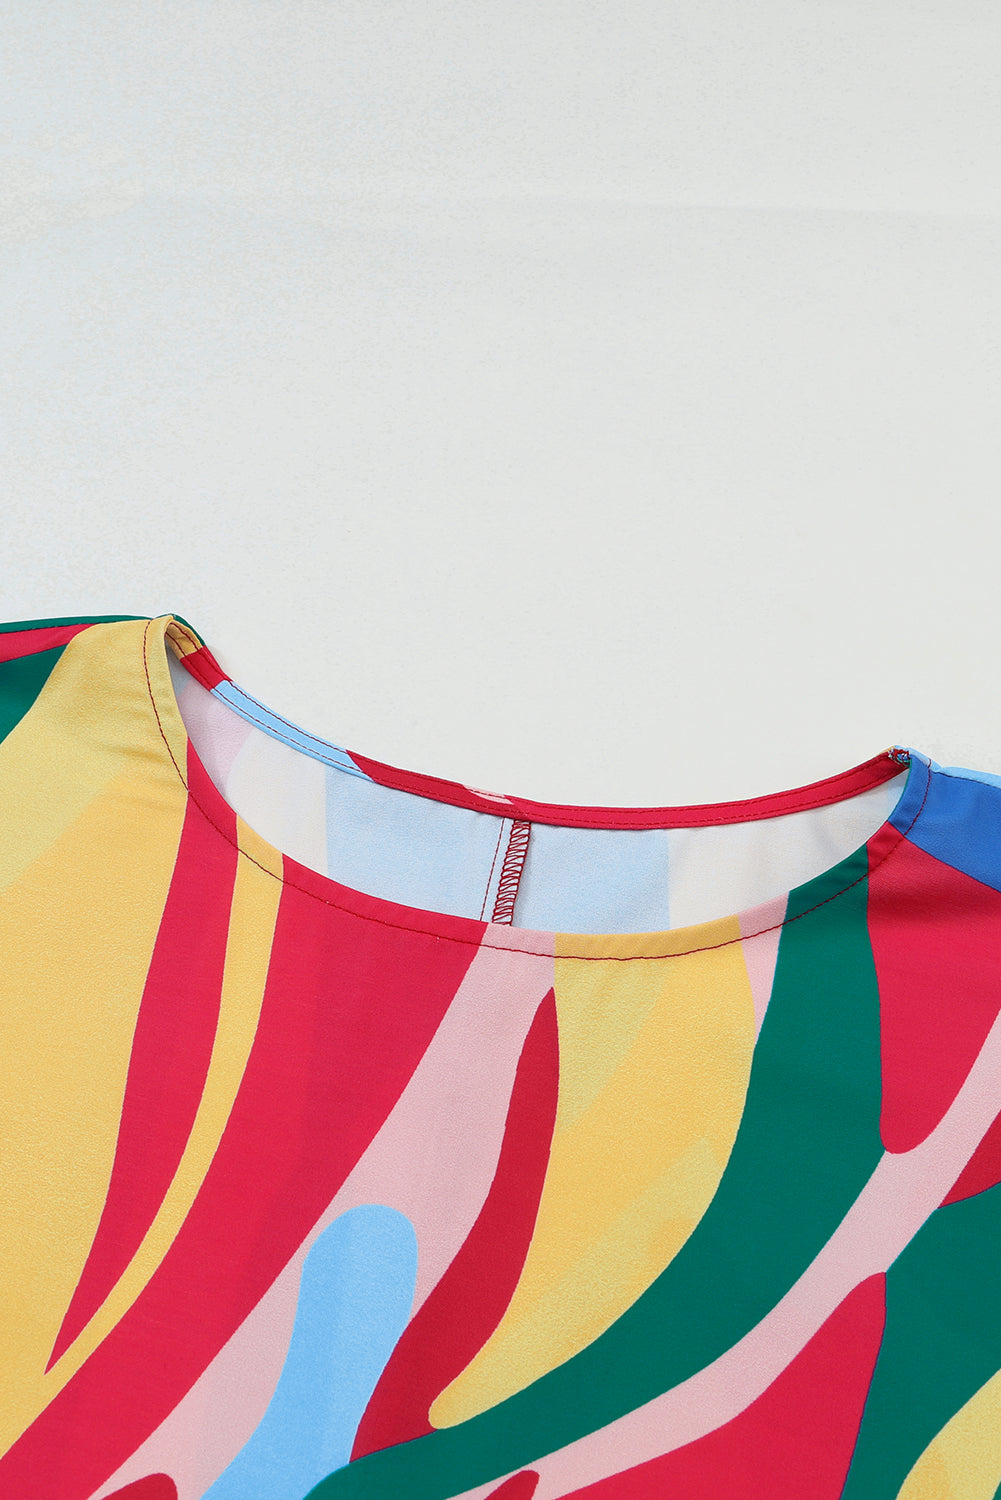 Večbarvna bluza z napihnjenimi rokavi z abstraktnim potiskom